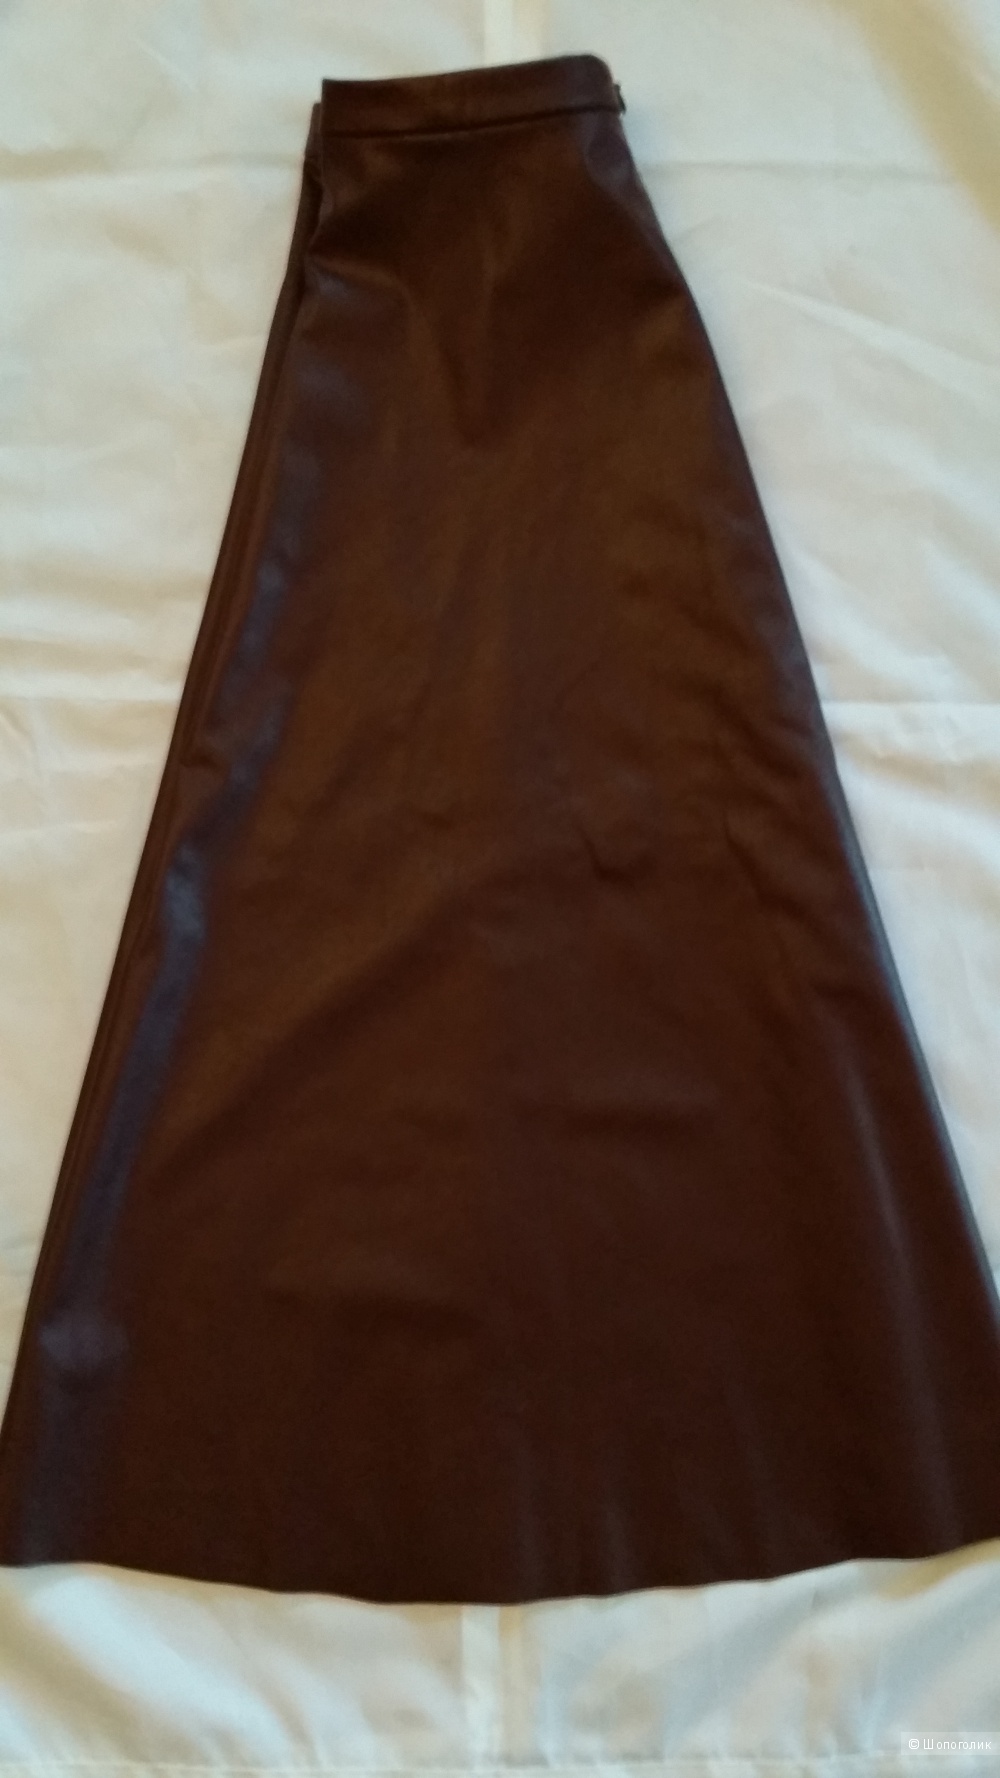 Юбка Beneton из искусственной кожи с застежкой на молнию сзади 40-42 размера.